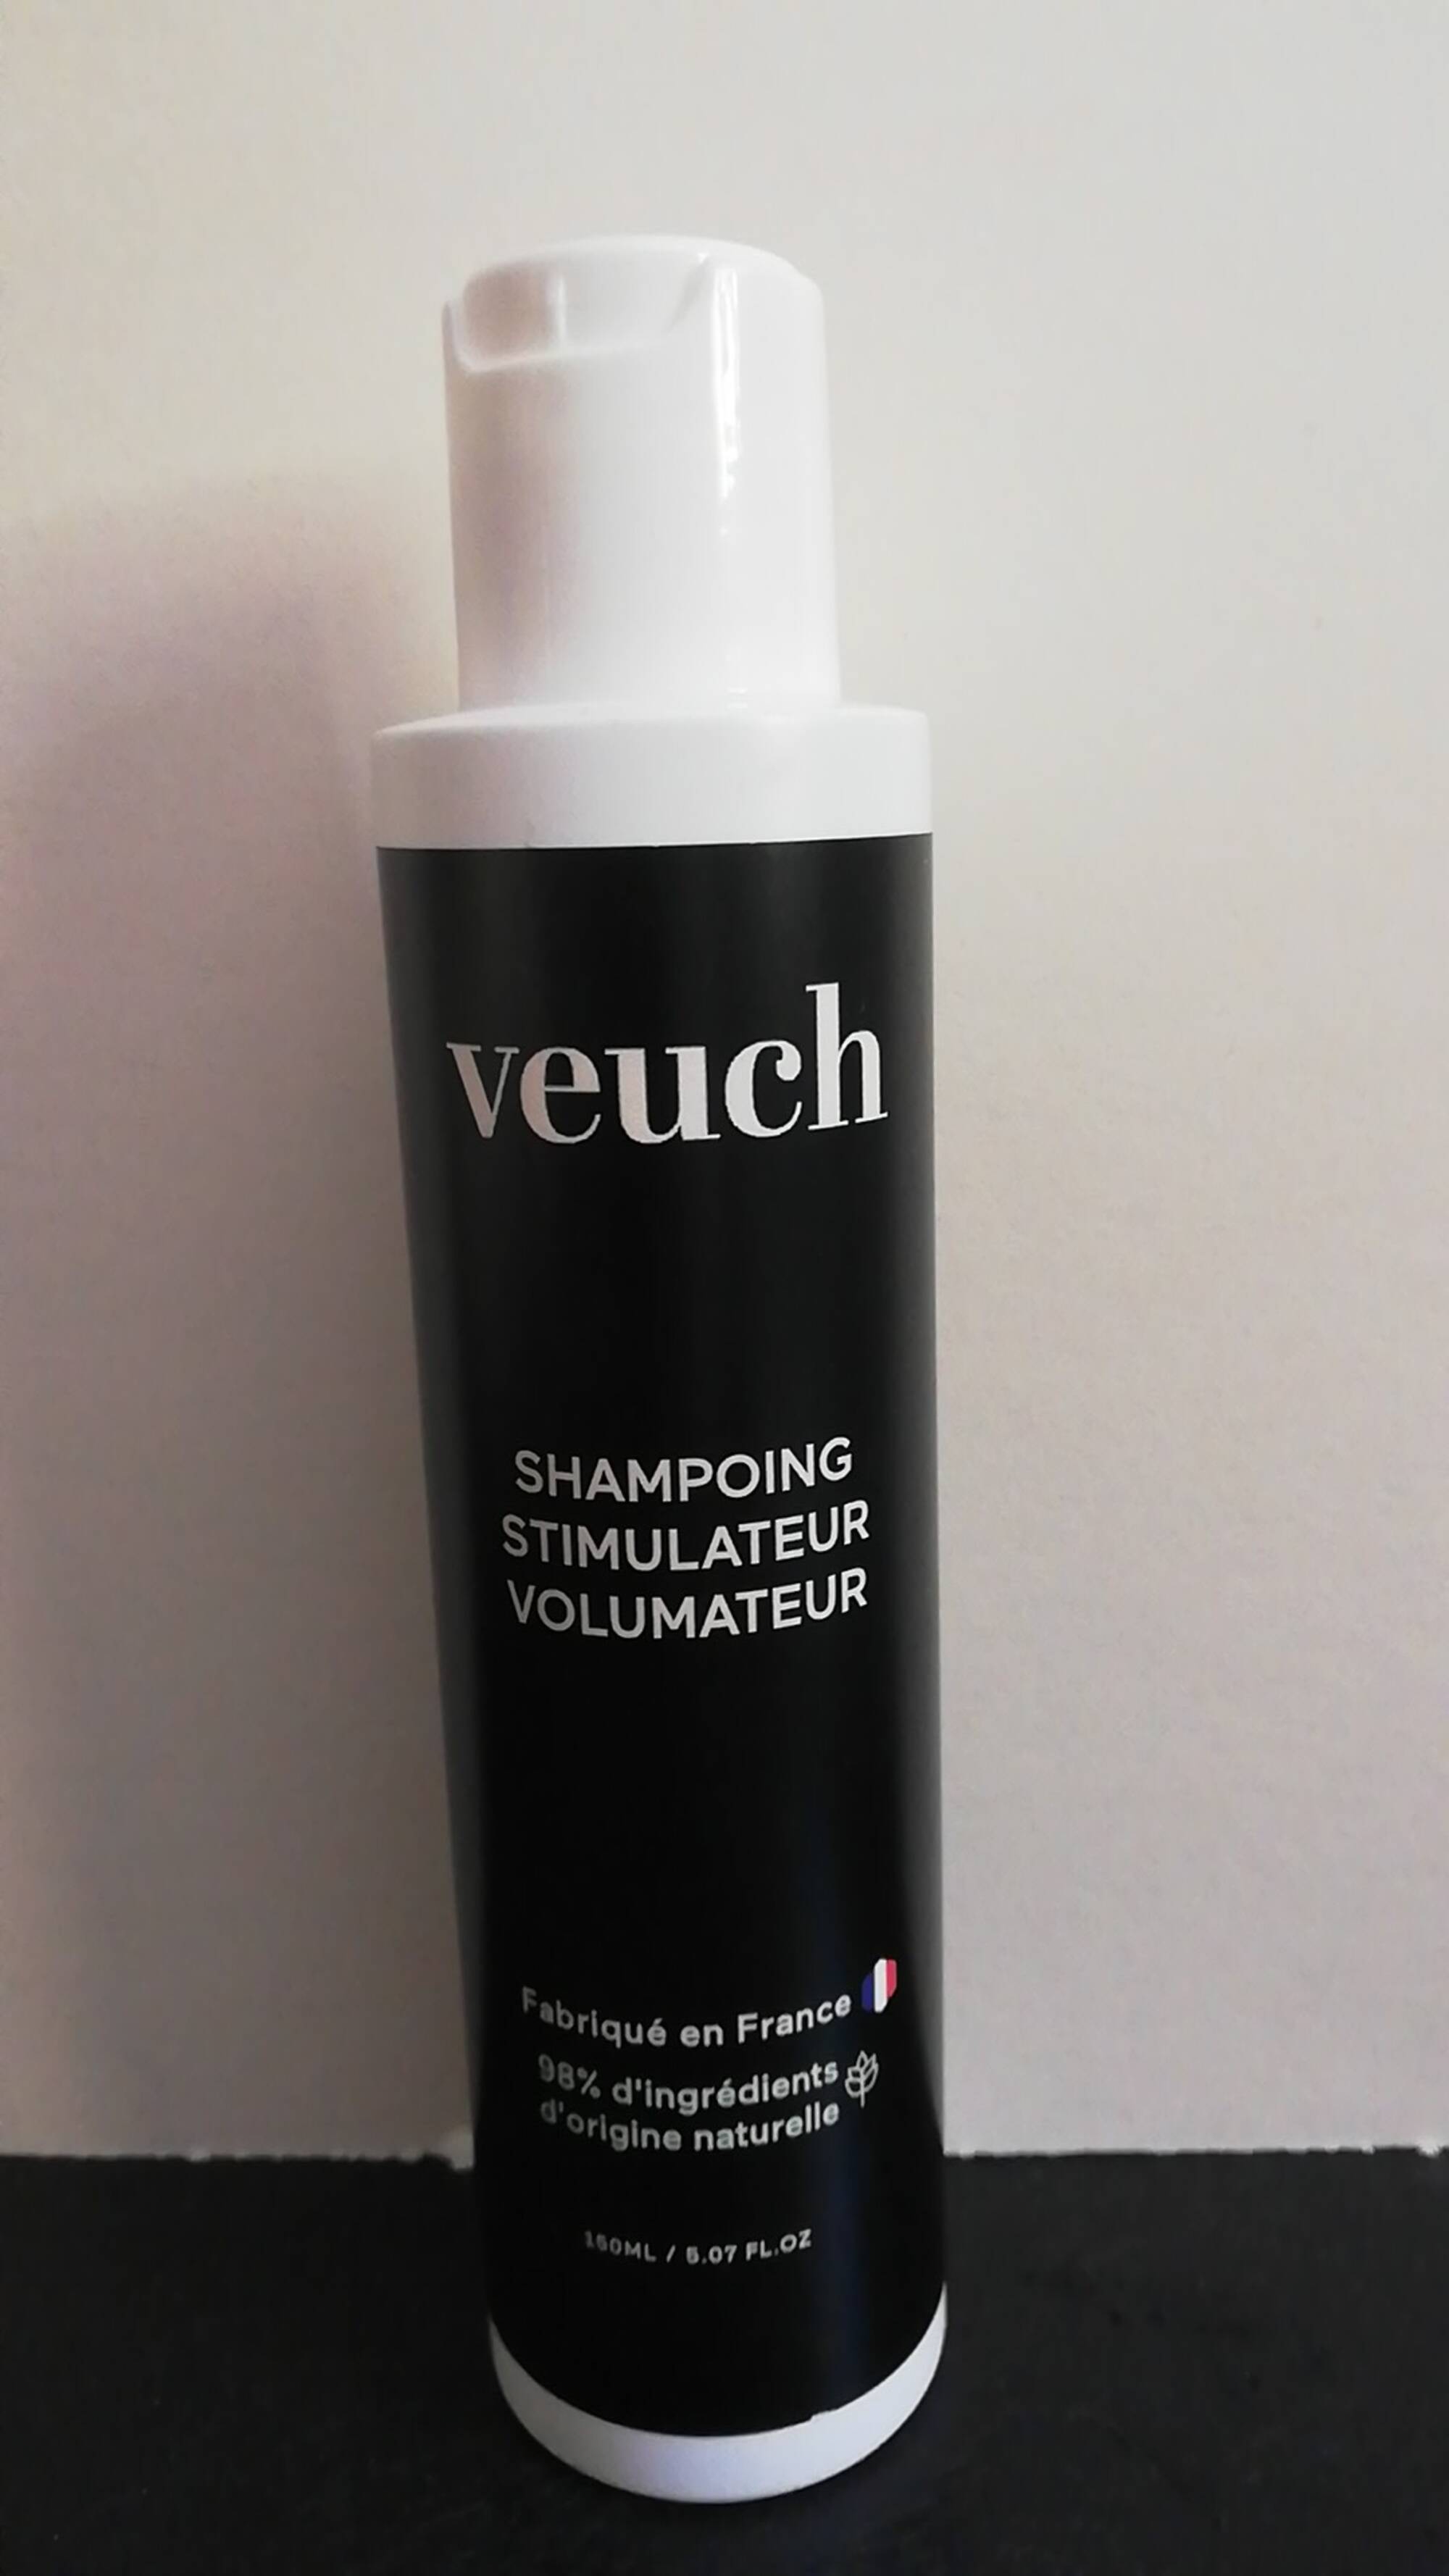 VEUCH - Shampoing stimulateur volumateur